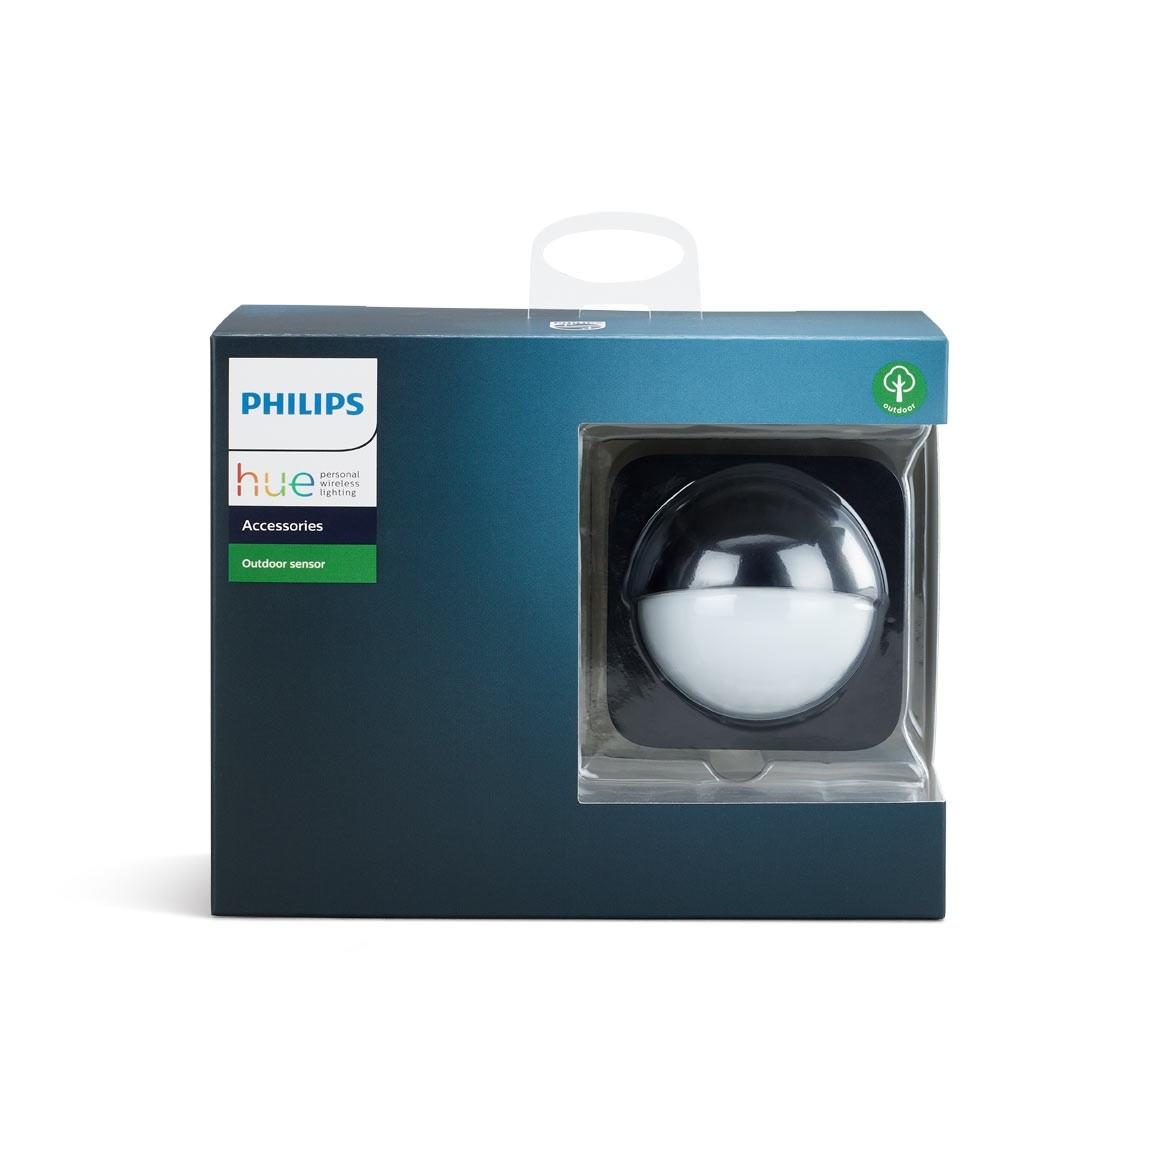 Philips Hue Outdoor Sensor Verpackung